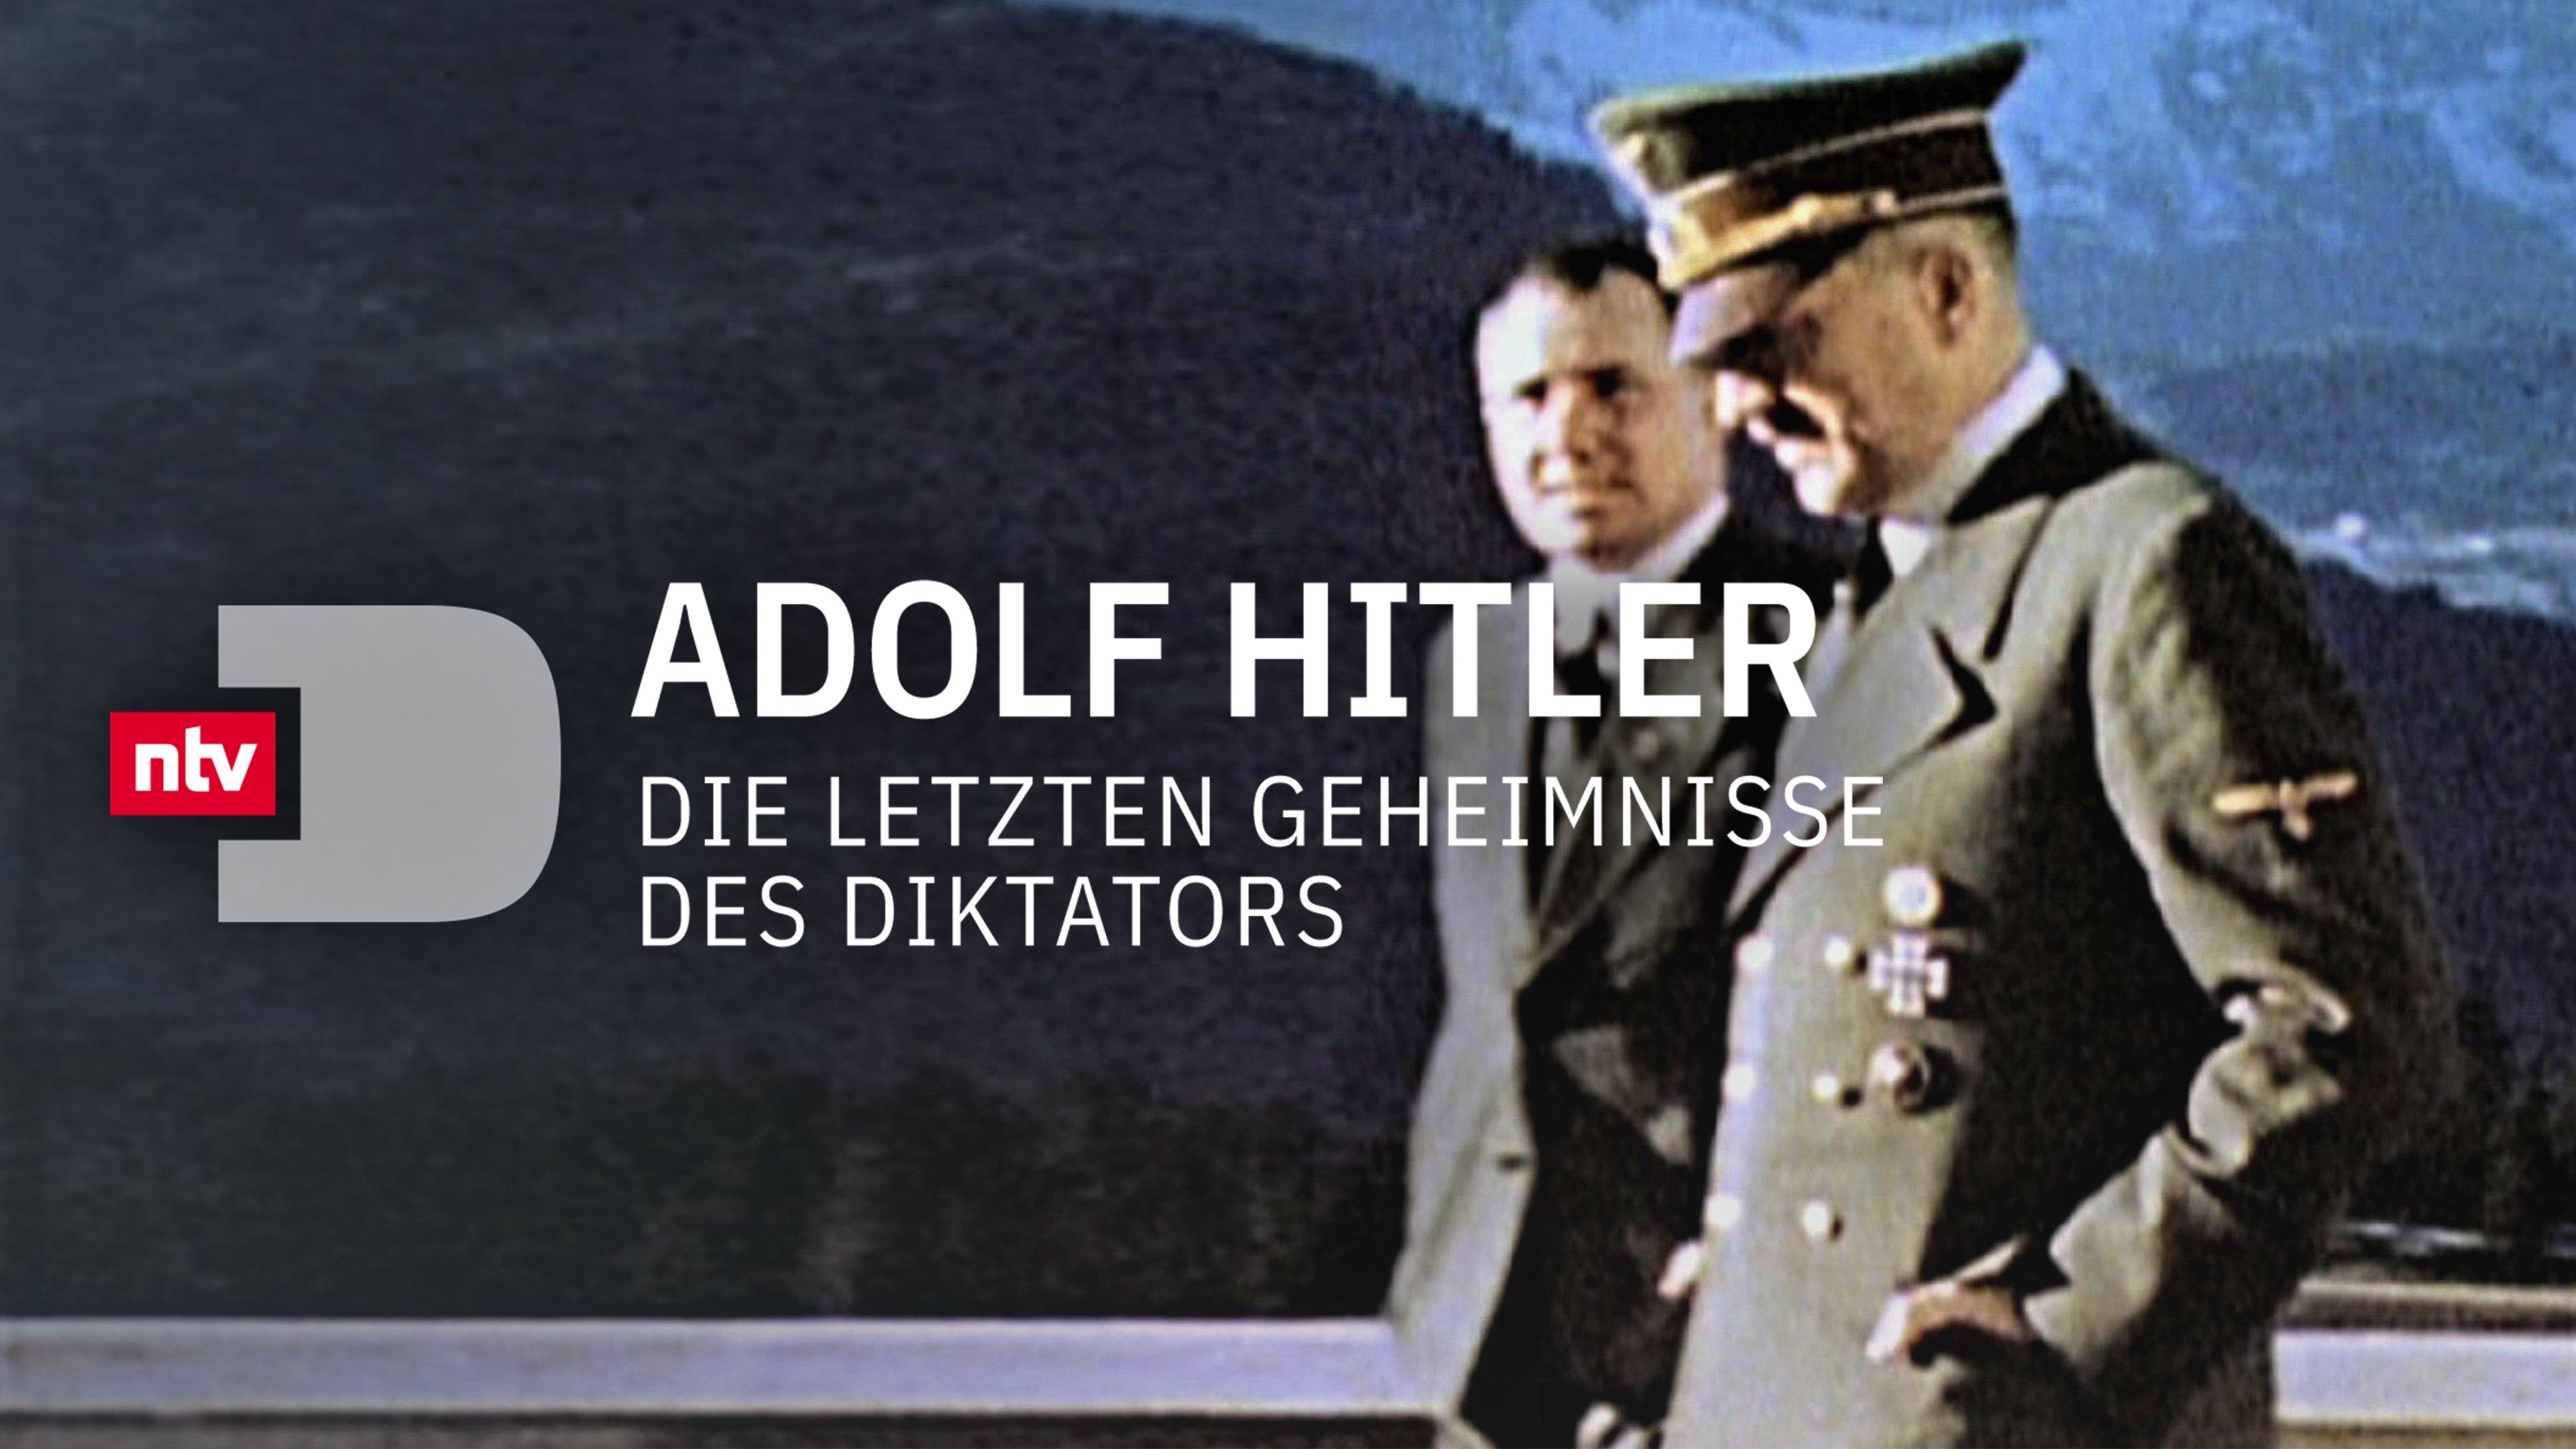 Adolf Hitler - Die letzten Geheimnisse des Diktators